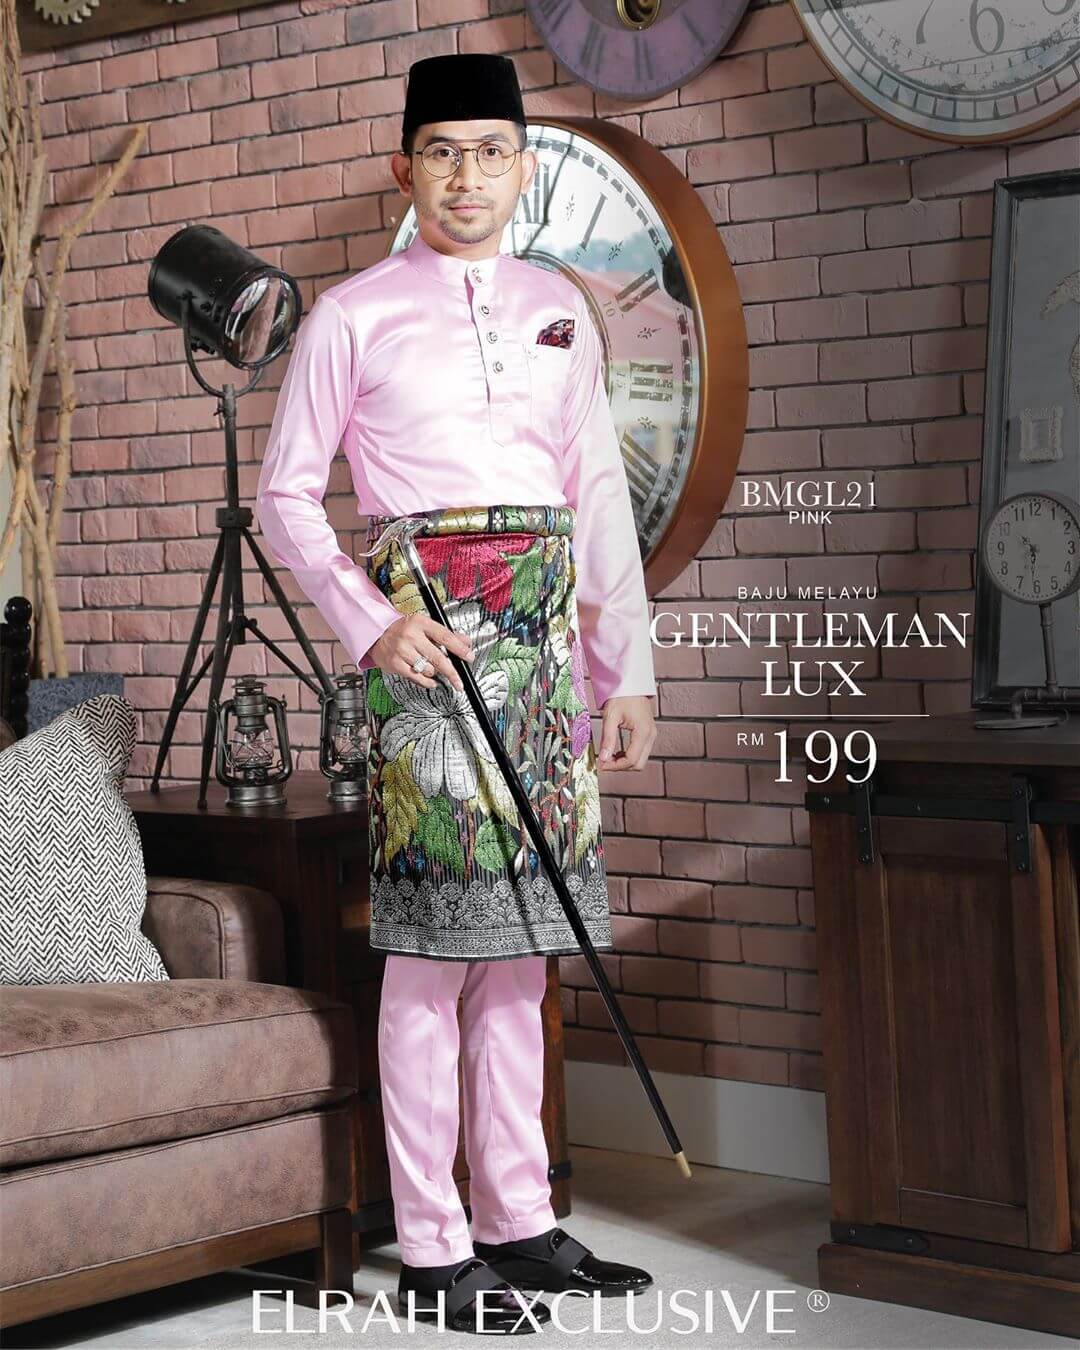  Baju  Melayu  Gentleman  Lux  Pink Elrah  Exclusive